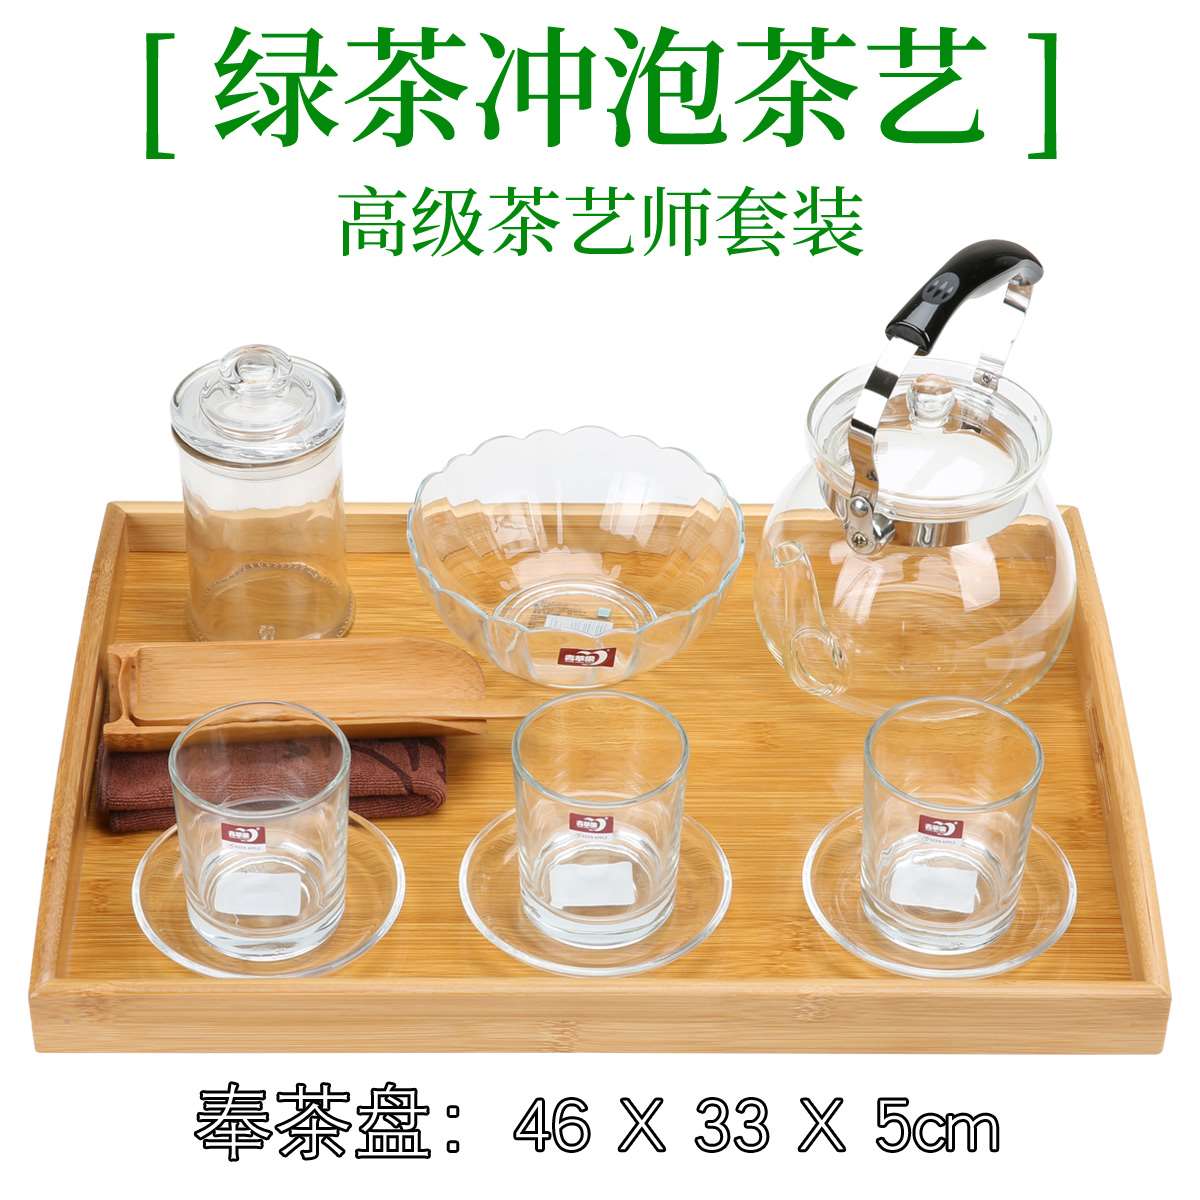 高档绿茶冲泡茶艺茶具套装/茶艺大赛/绿茶教学茶具组合/茶艺培训